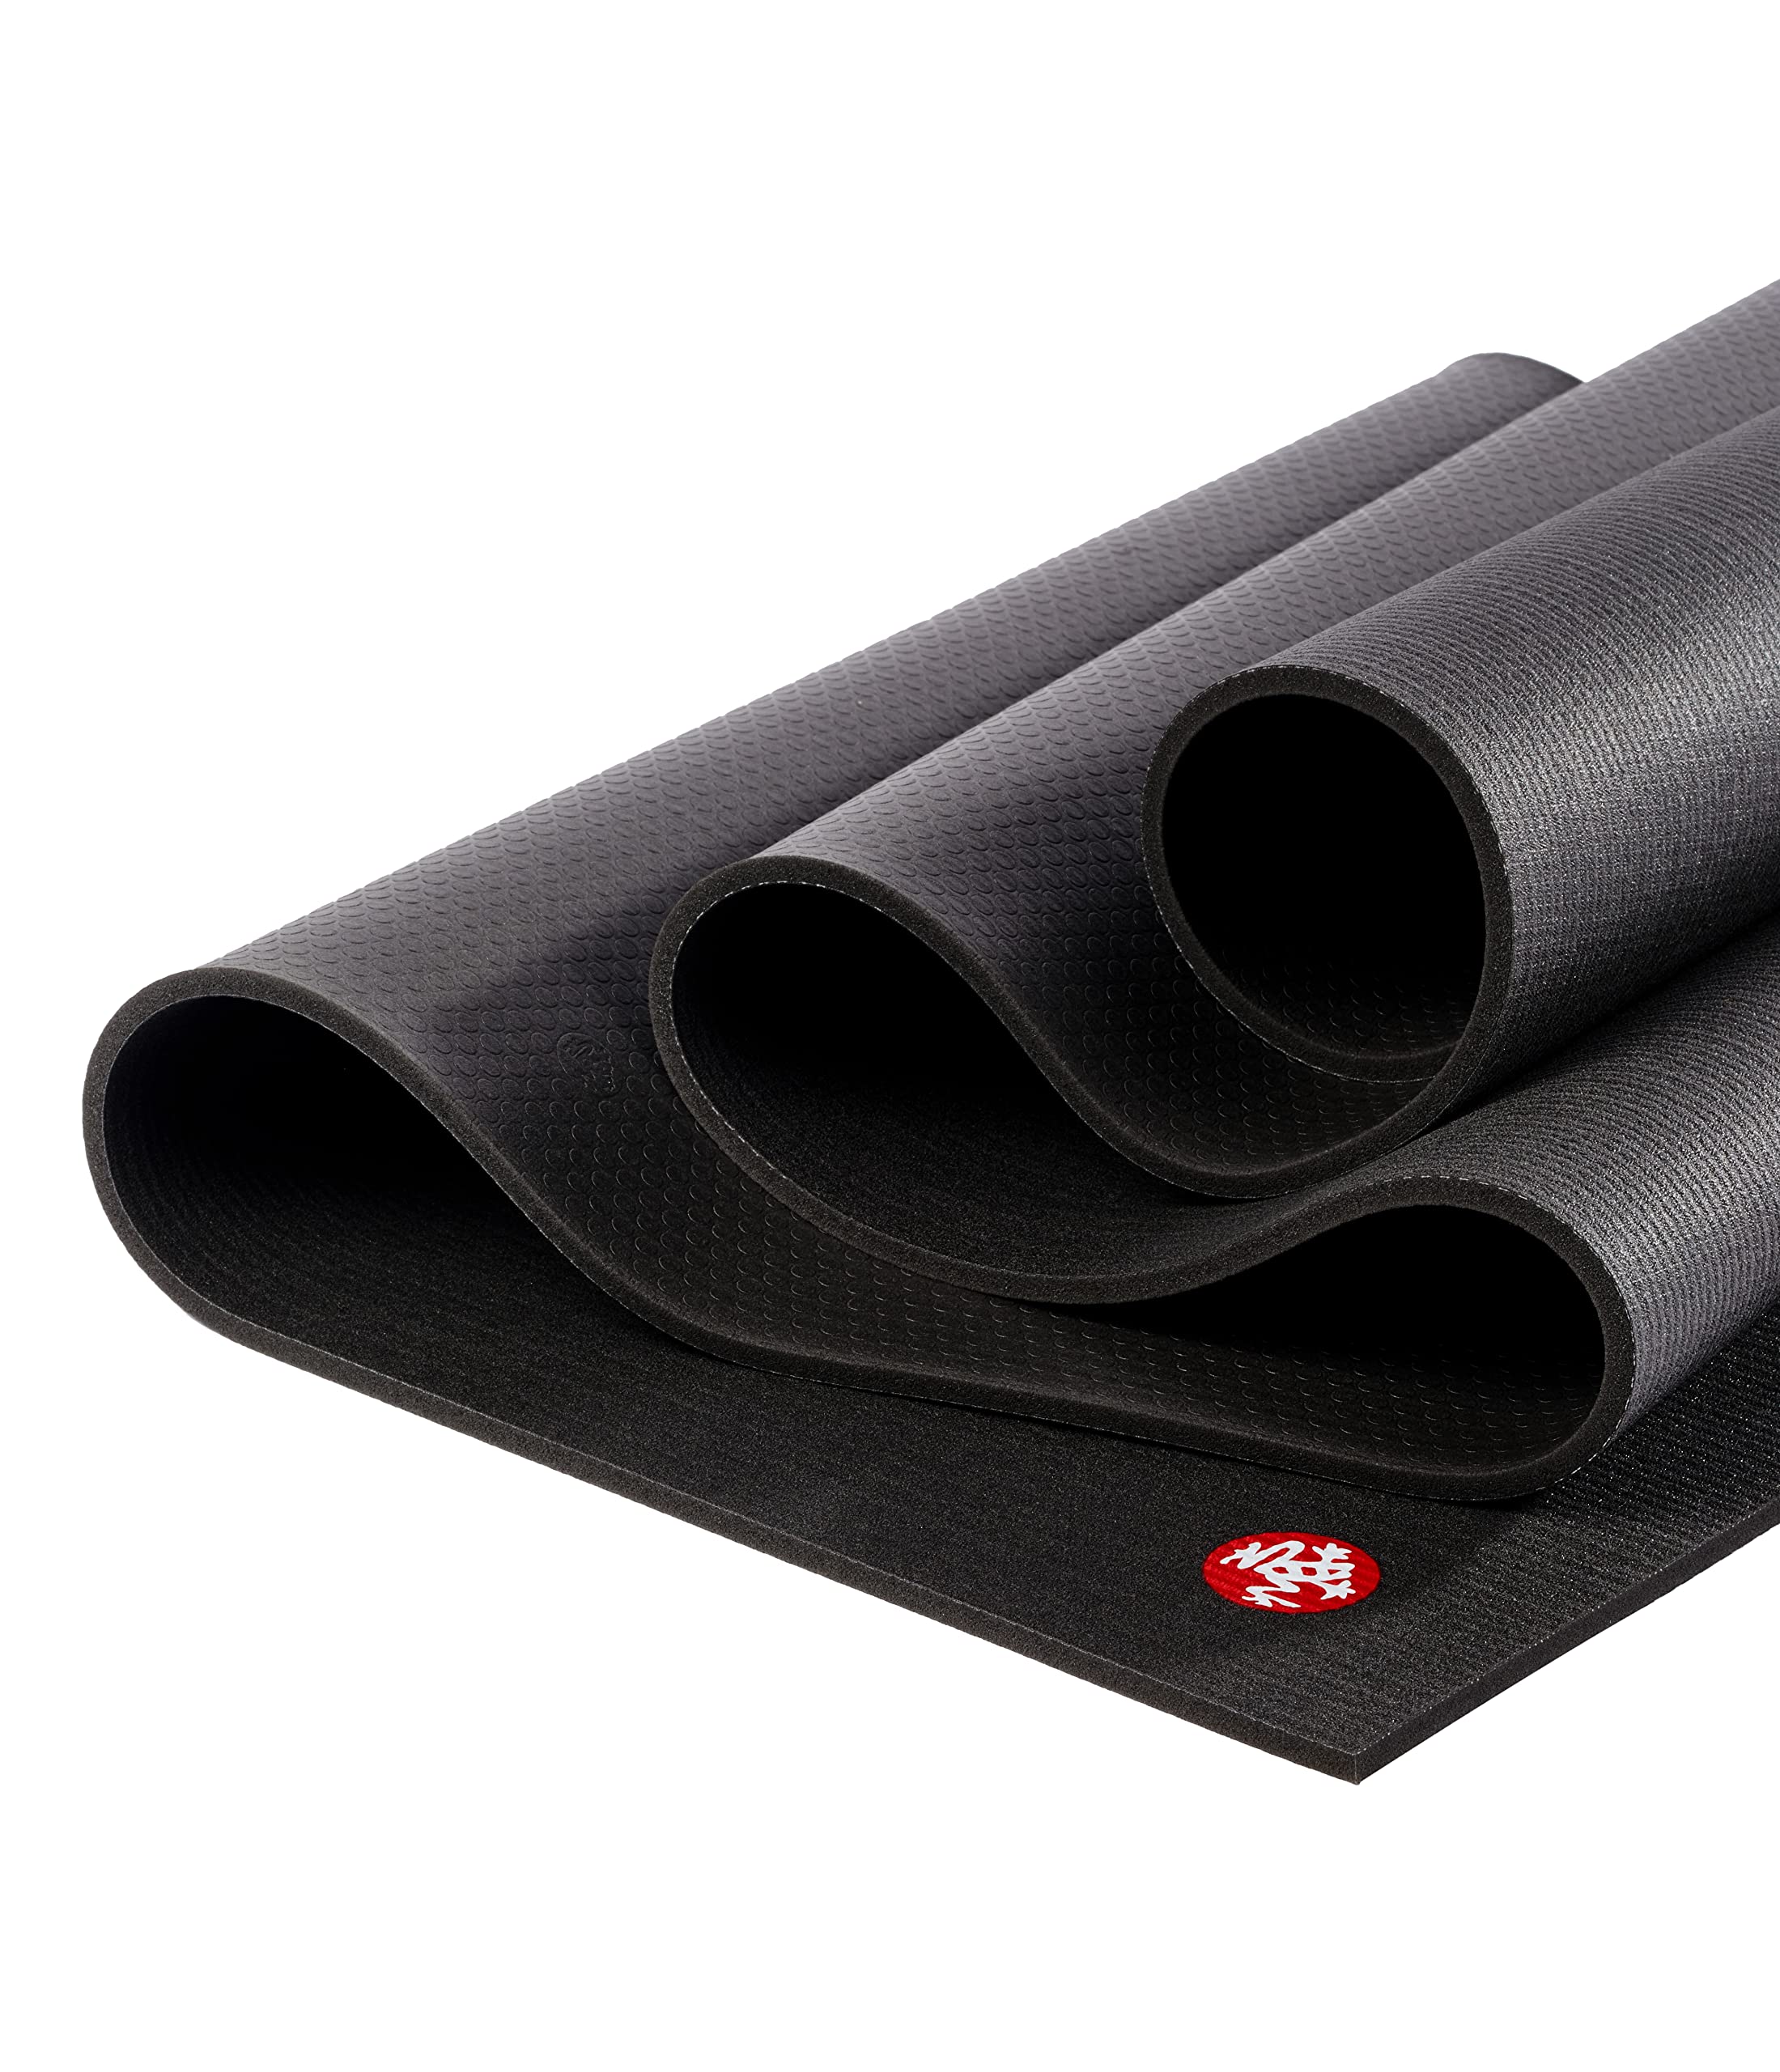 Manduka PRO 瑜伽垫 - 适用于瑜伽、普拉提和家庭锻炼的多用途运动垫，经久耐用，6 毫米厚的垫子可提供关节支撑和稳定性